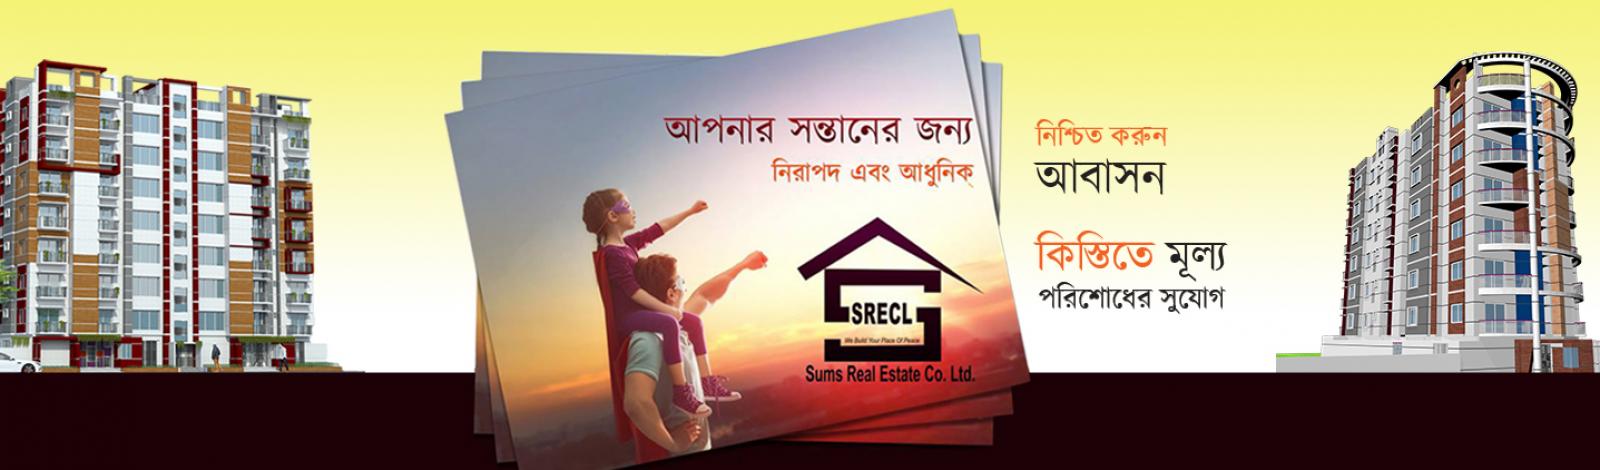 SUMS Real Estate Co Ltd banner